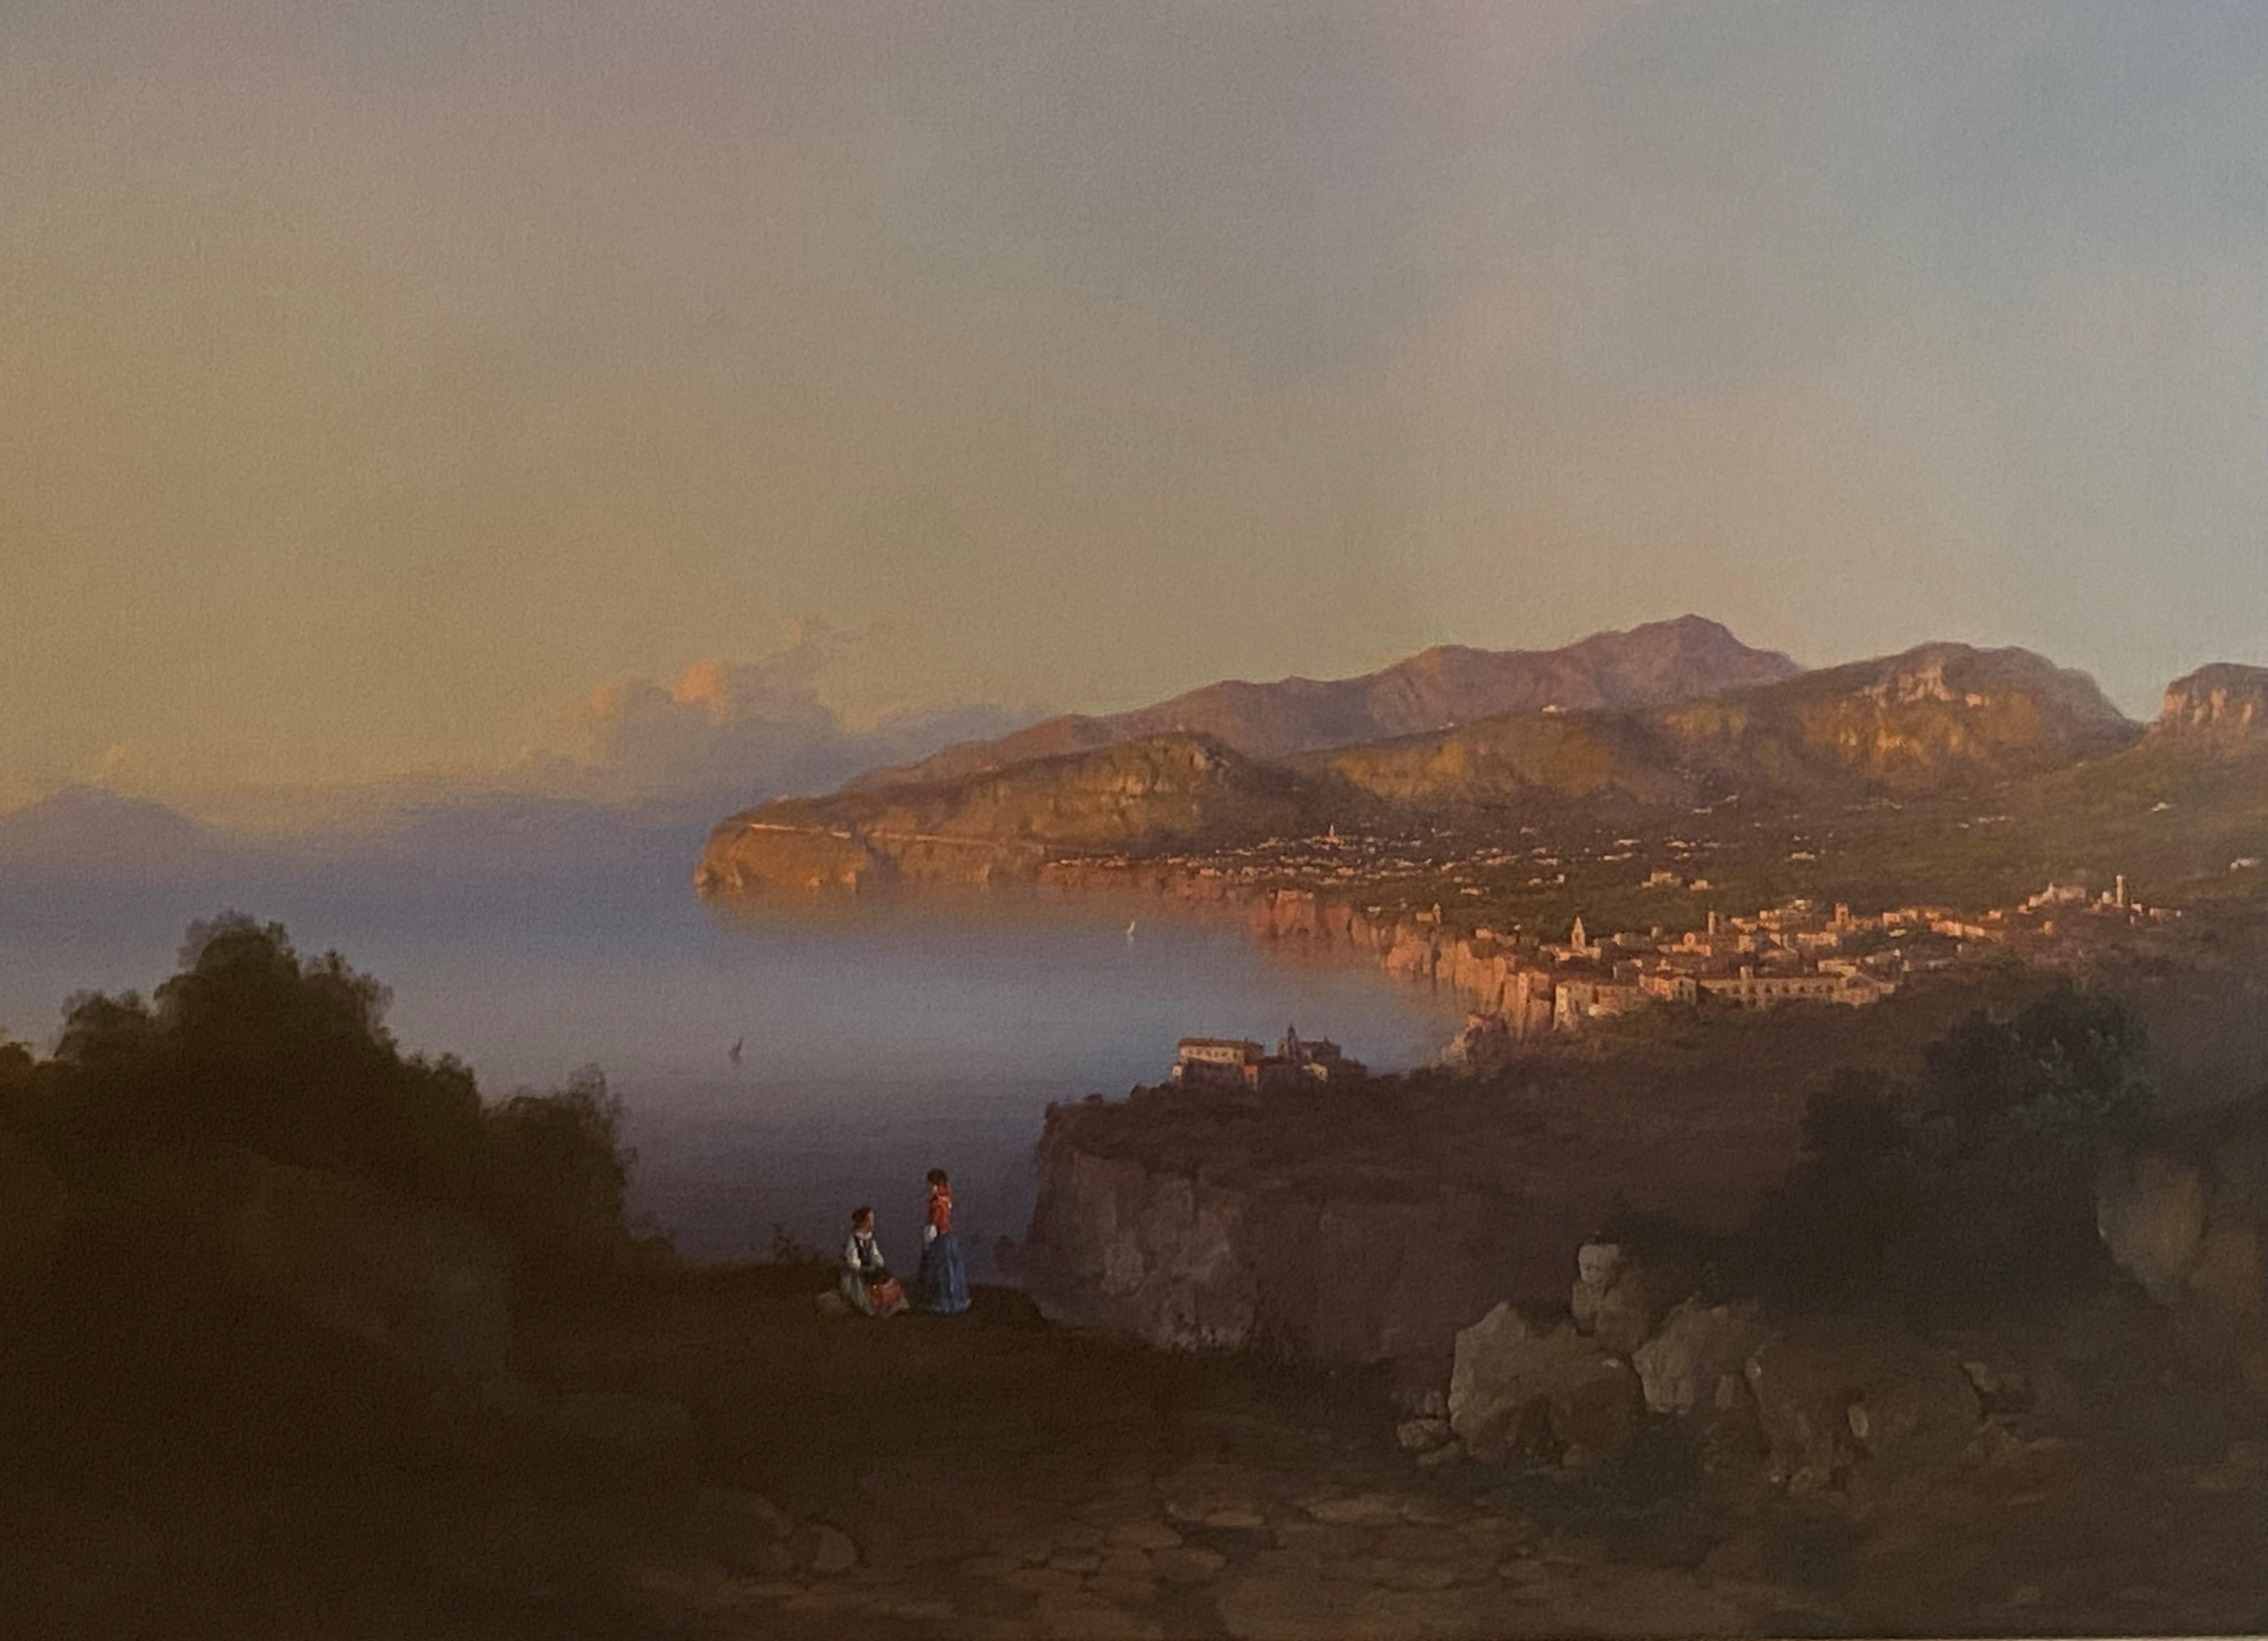 Landscape Painting Unknown - Vue parnoramique de l'école italienne de Sorrento, inscrite et datée de 1855